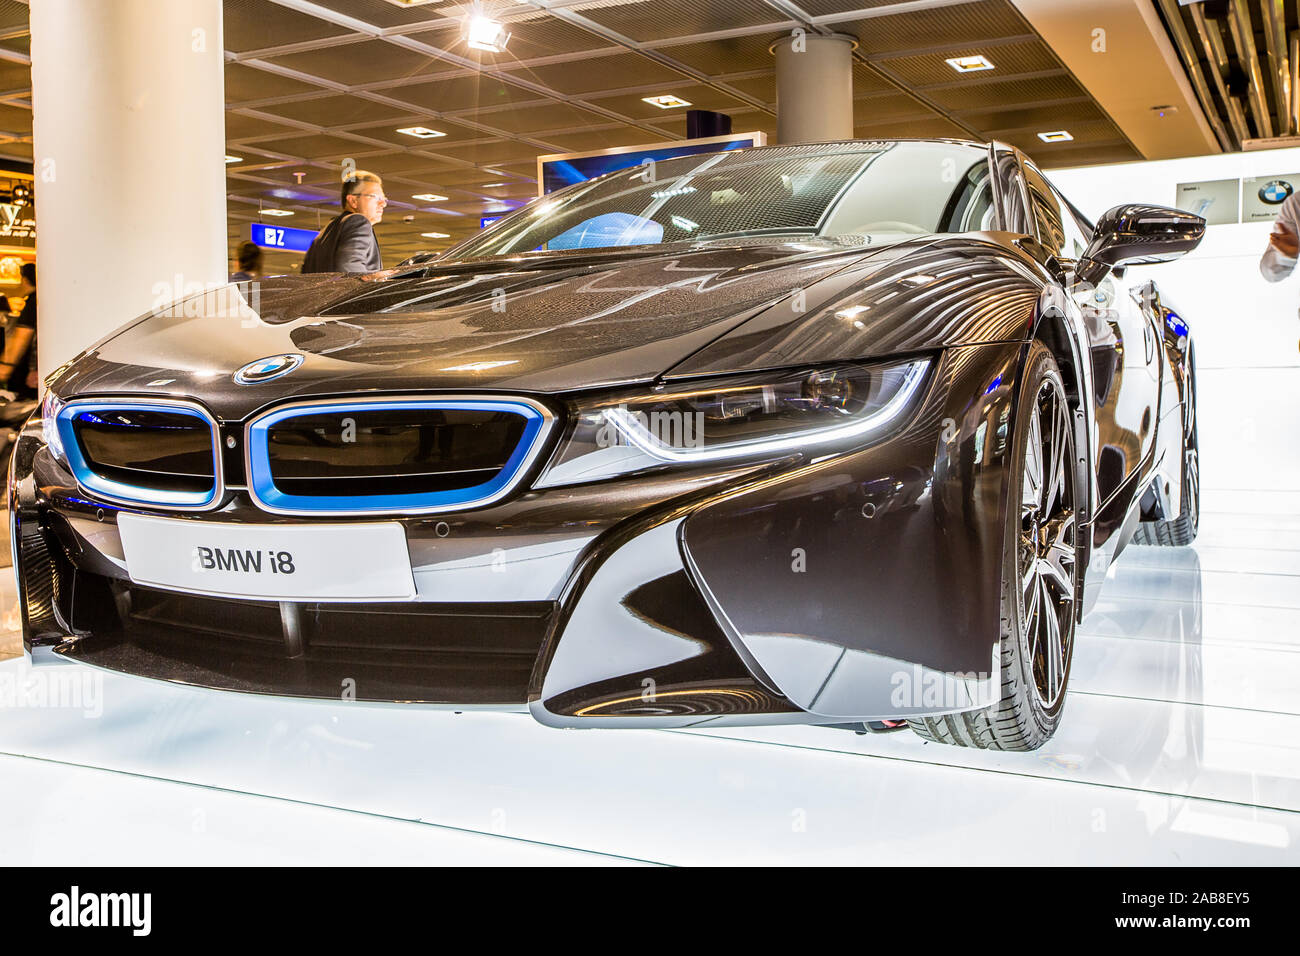 Flughafen Dubai, Australien - Juni 12, 2014: BMW i8 hybrid Auto auf Ausstellung in Dubai Airport. Stockfoto